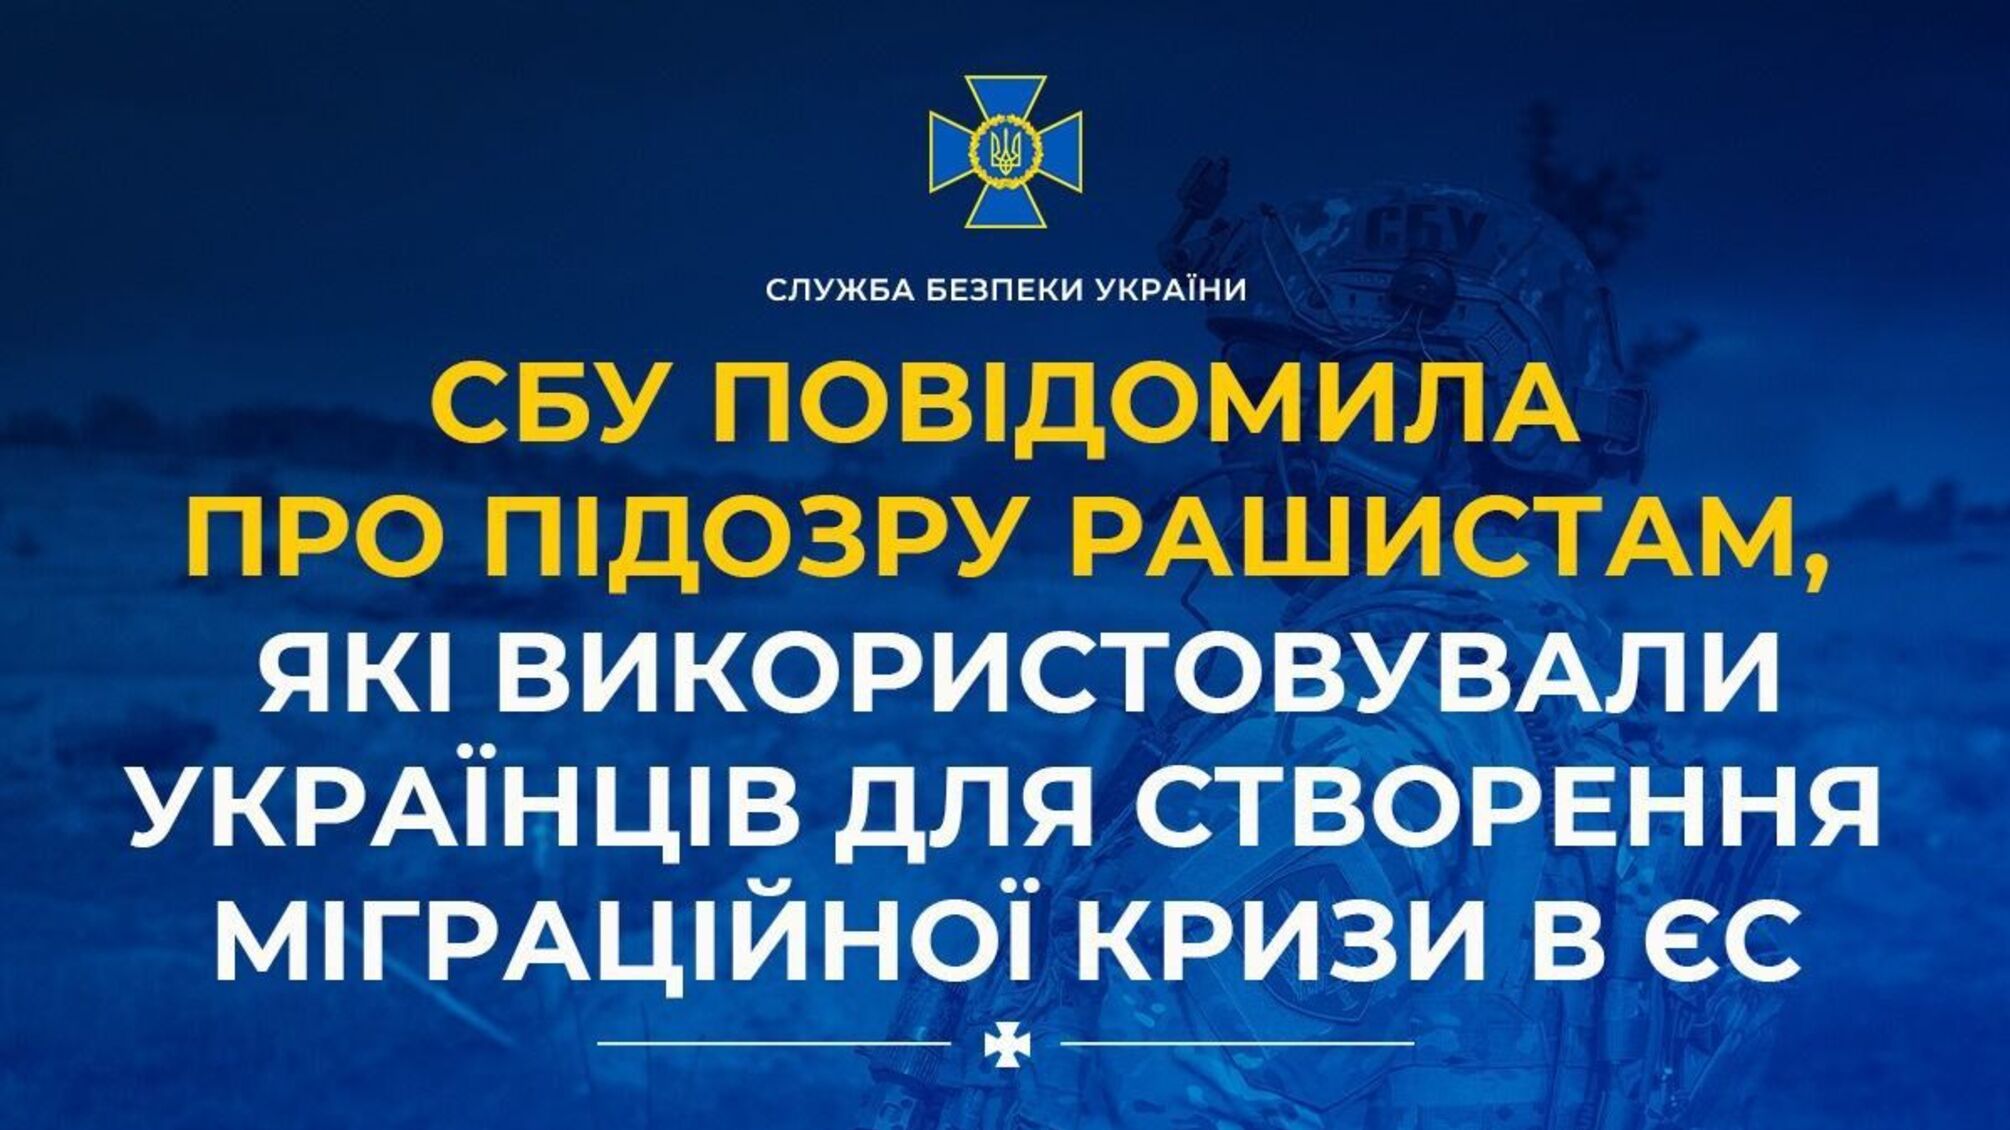 СБУ повідомила про підозру рашистам, які використовували українців для створення міграційної кризи в ЄС